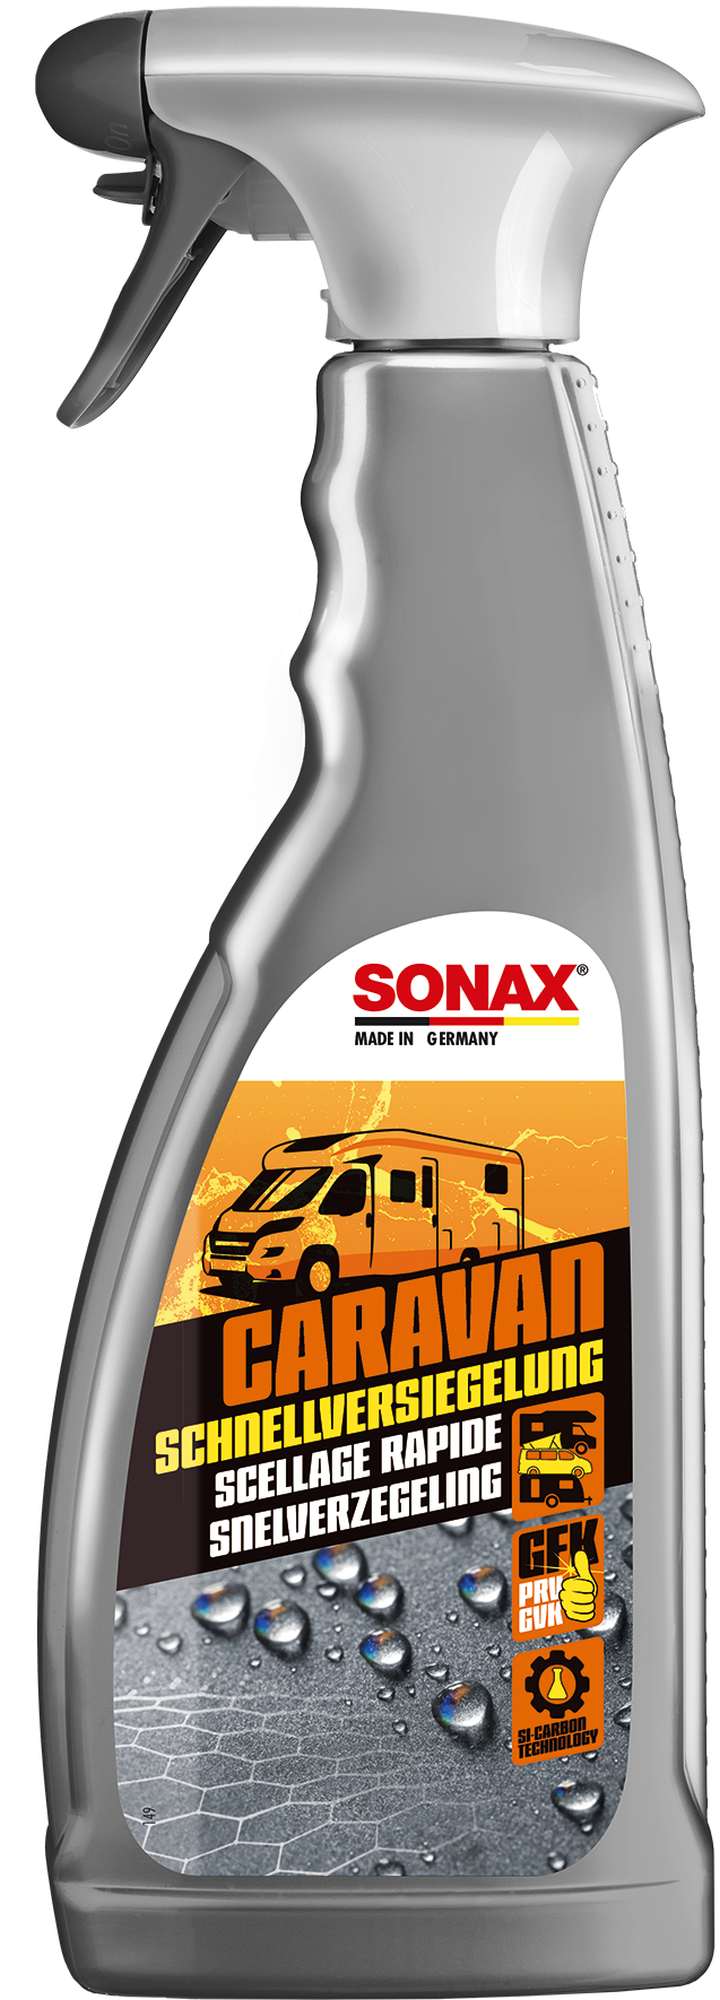 Sonax Caravan SchnellVersiegelung - Wohnwagenschutz, 750 ml